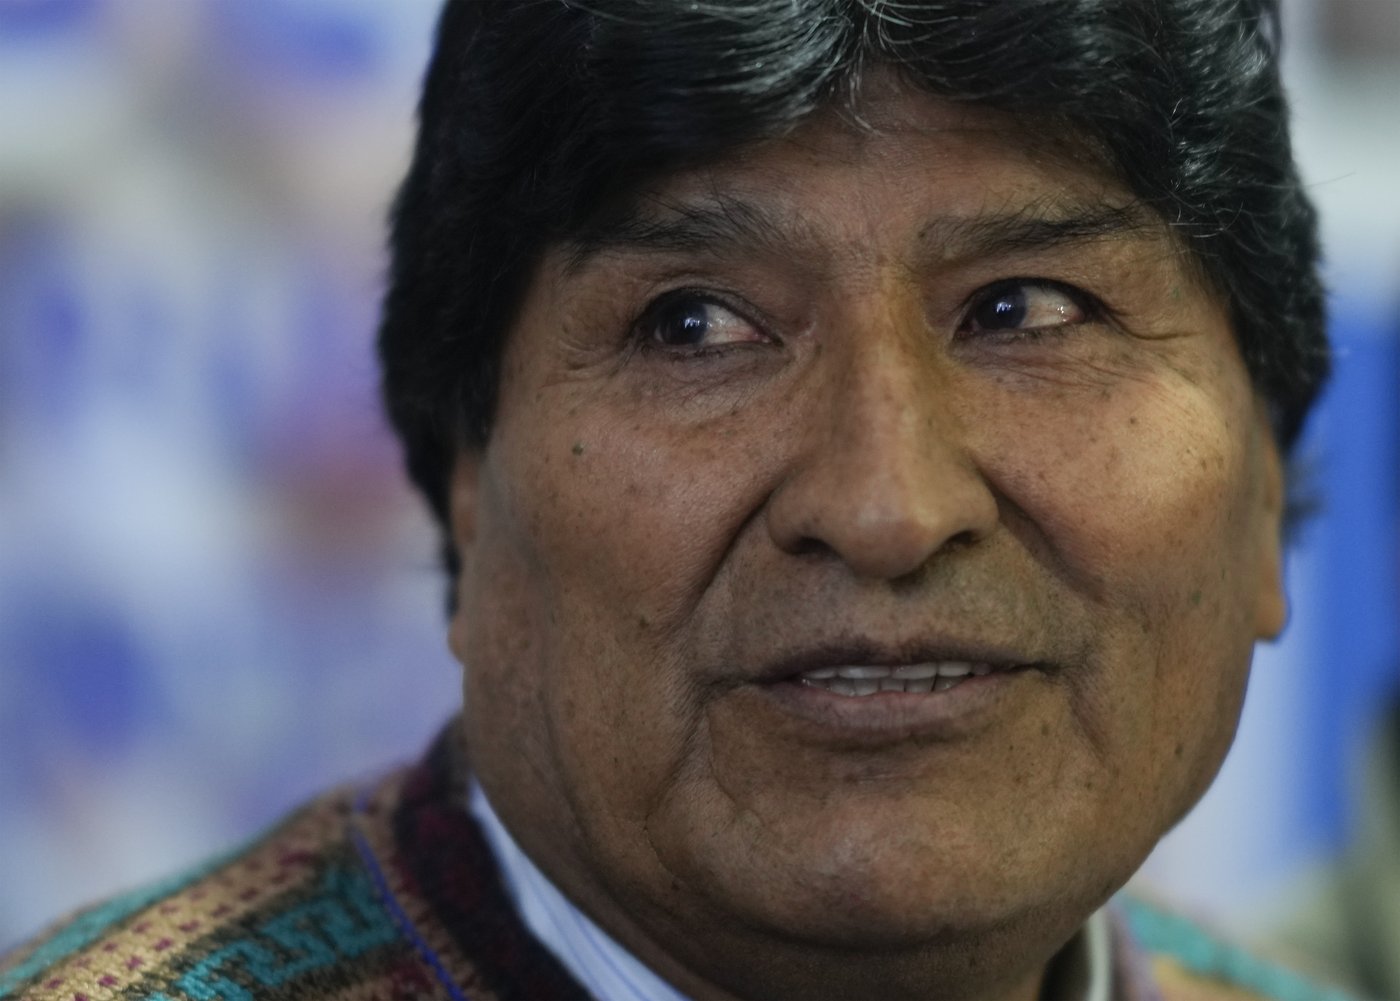 Le président bolivien a orchestré un «auto-coup d’État», affirme son rival Morales